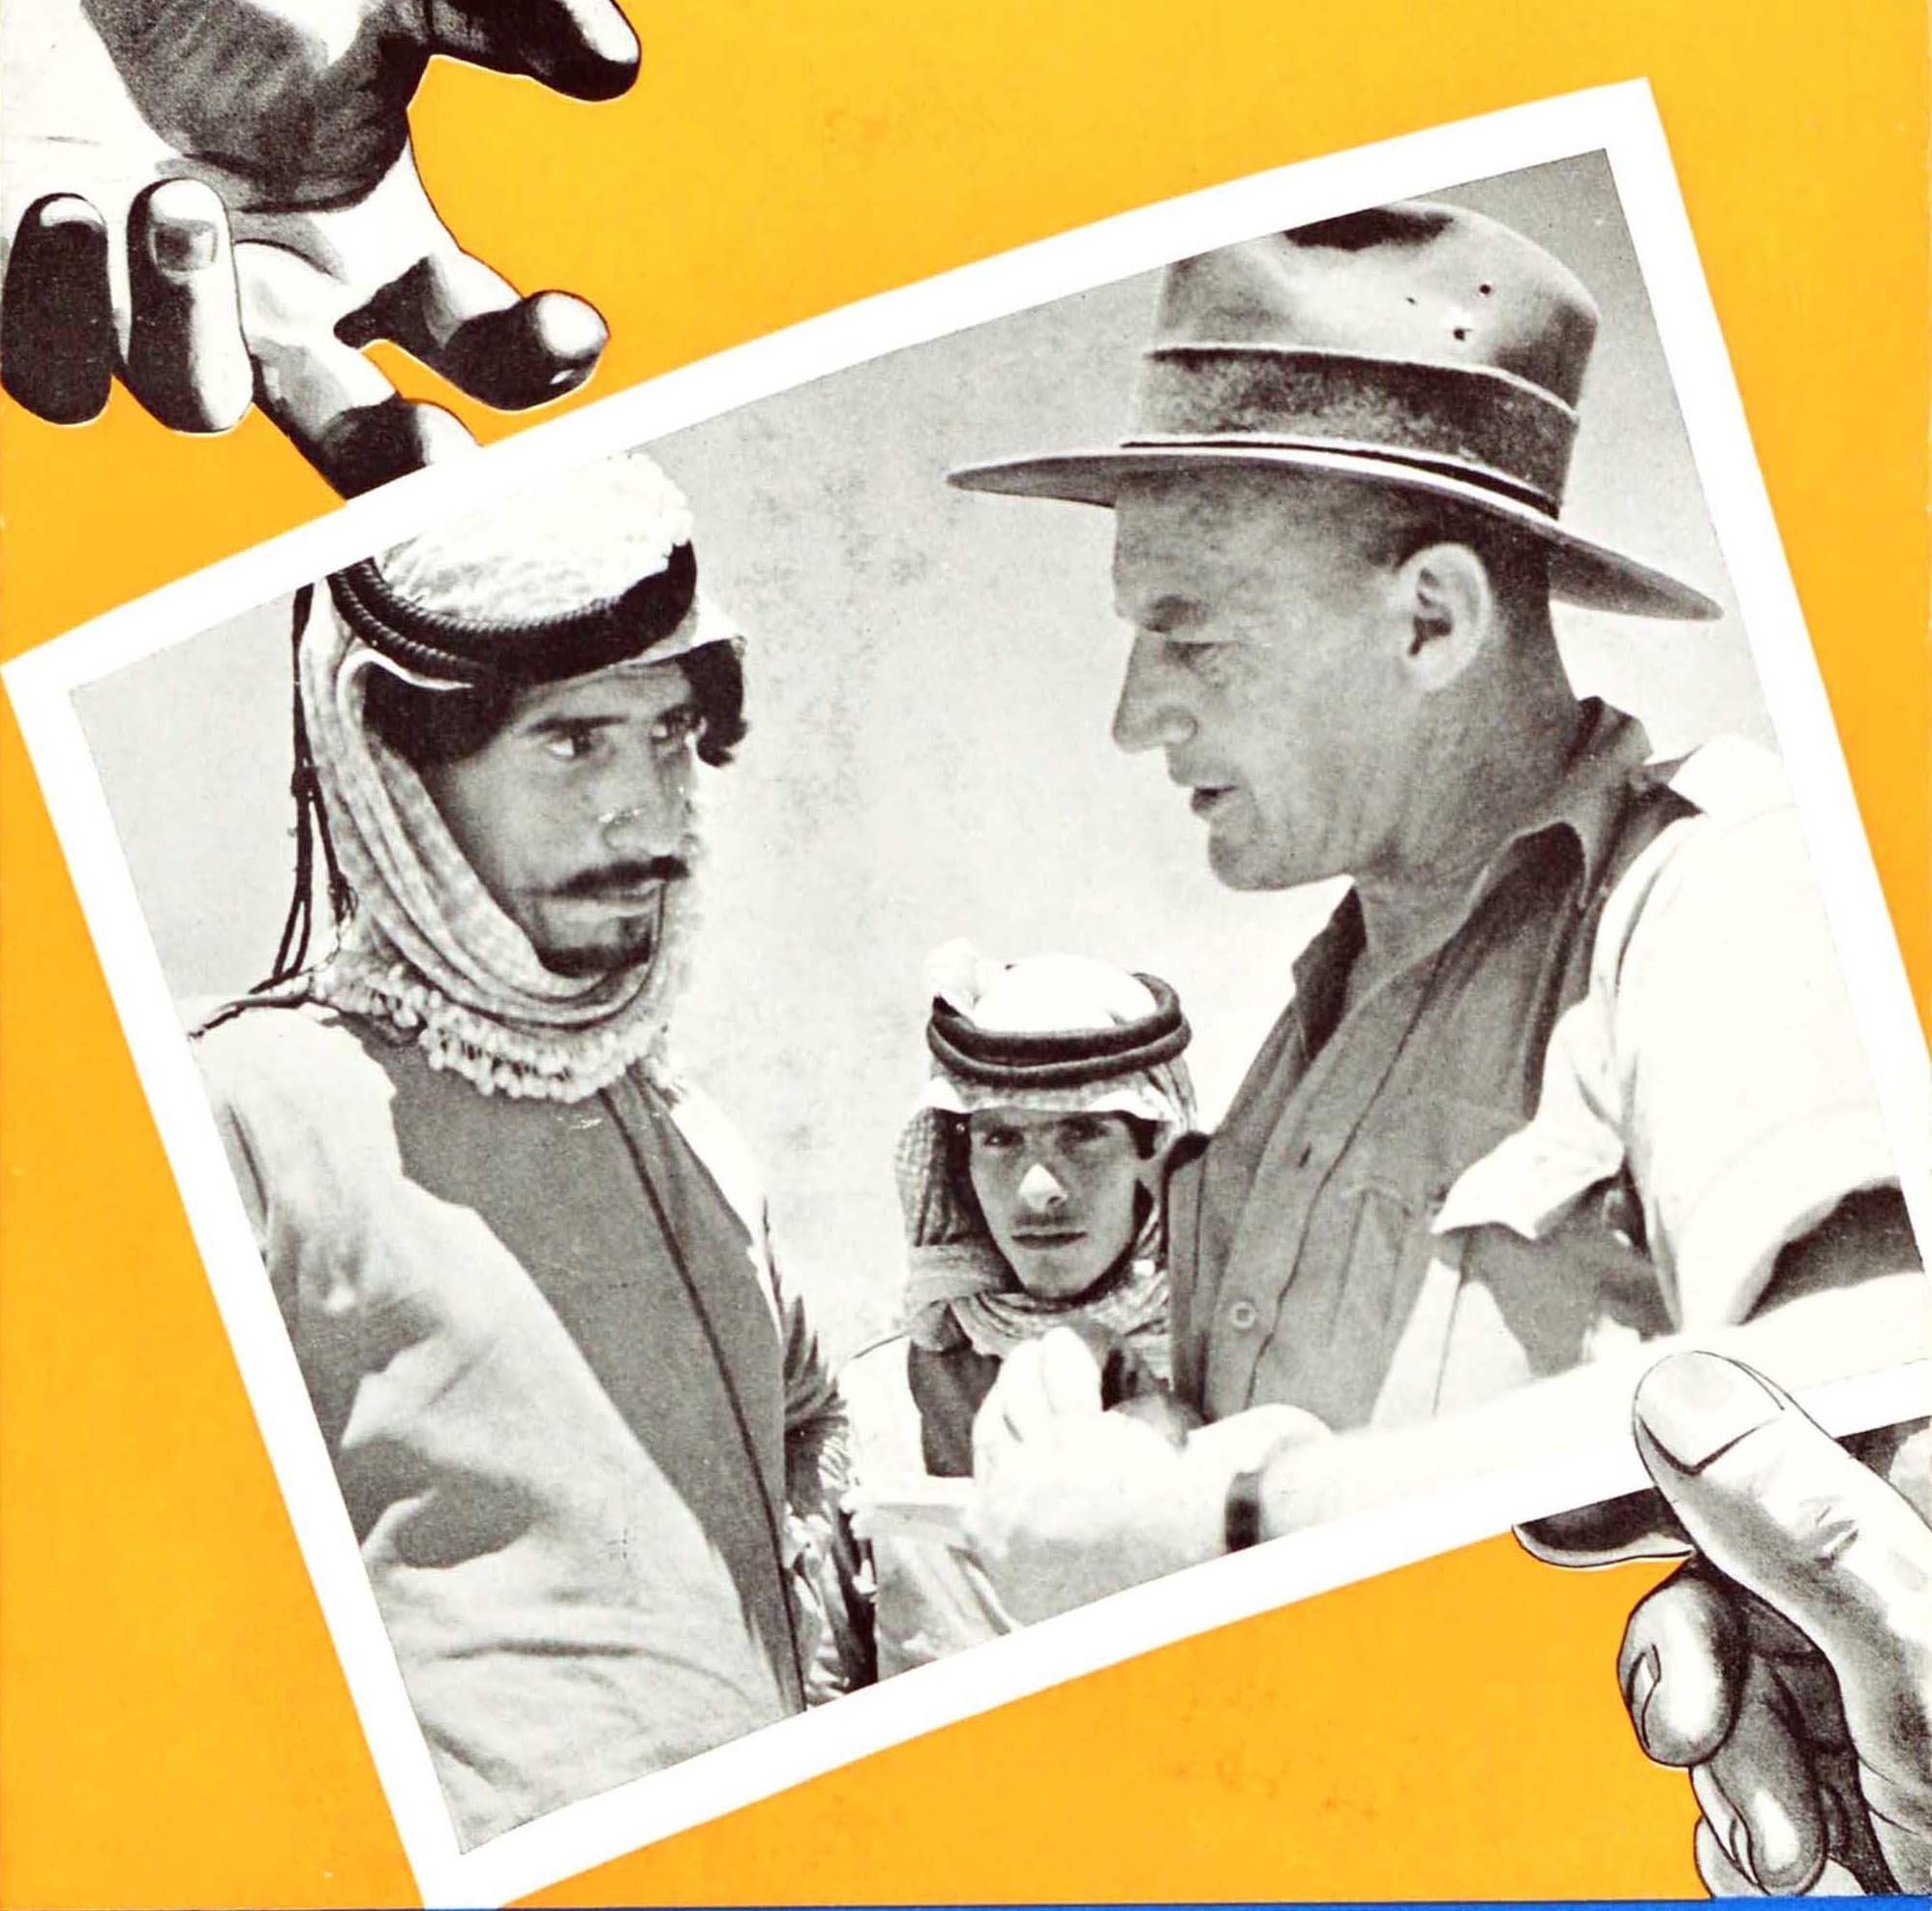 Originales Propagandaplakat zur Rekrutierung von Freiwilligen für die Second Australian Imperial Force (2nd AIF; 1939-1947) im Zweiten Weltkrieg - Wie stolz werden sie sein, Ihre Fotos weiterzugeben. Großartiges Bild, das die Hand einer Person